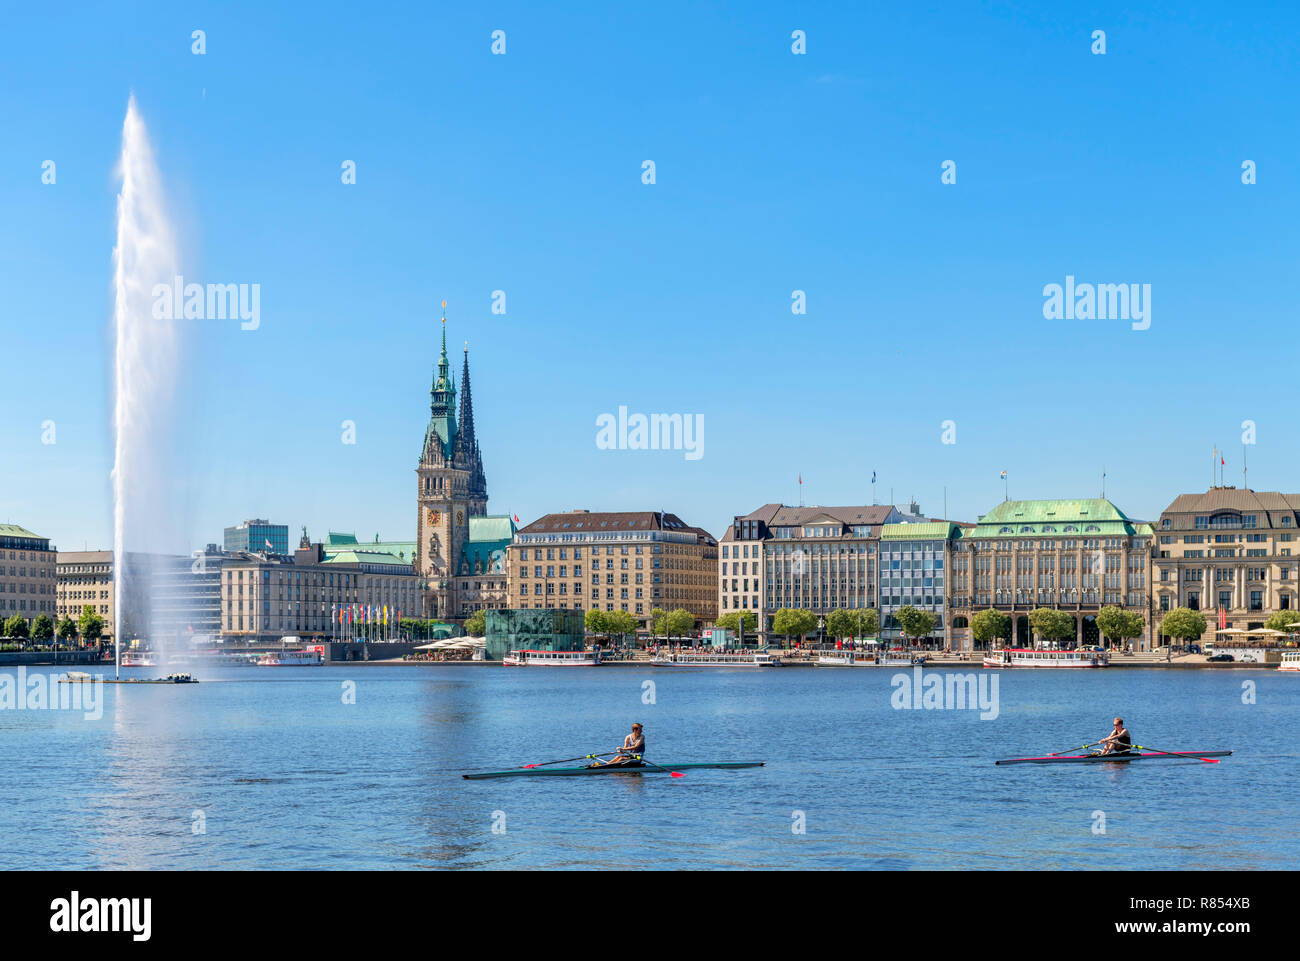 Los remeros sculling en lago Binnenalster con el horizonte de la ciudad detrás, Hamburgo, Alemania. Foto de stock